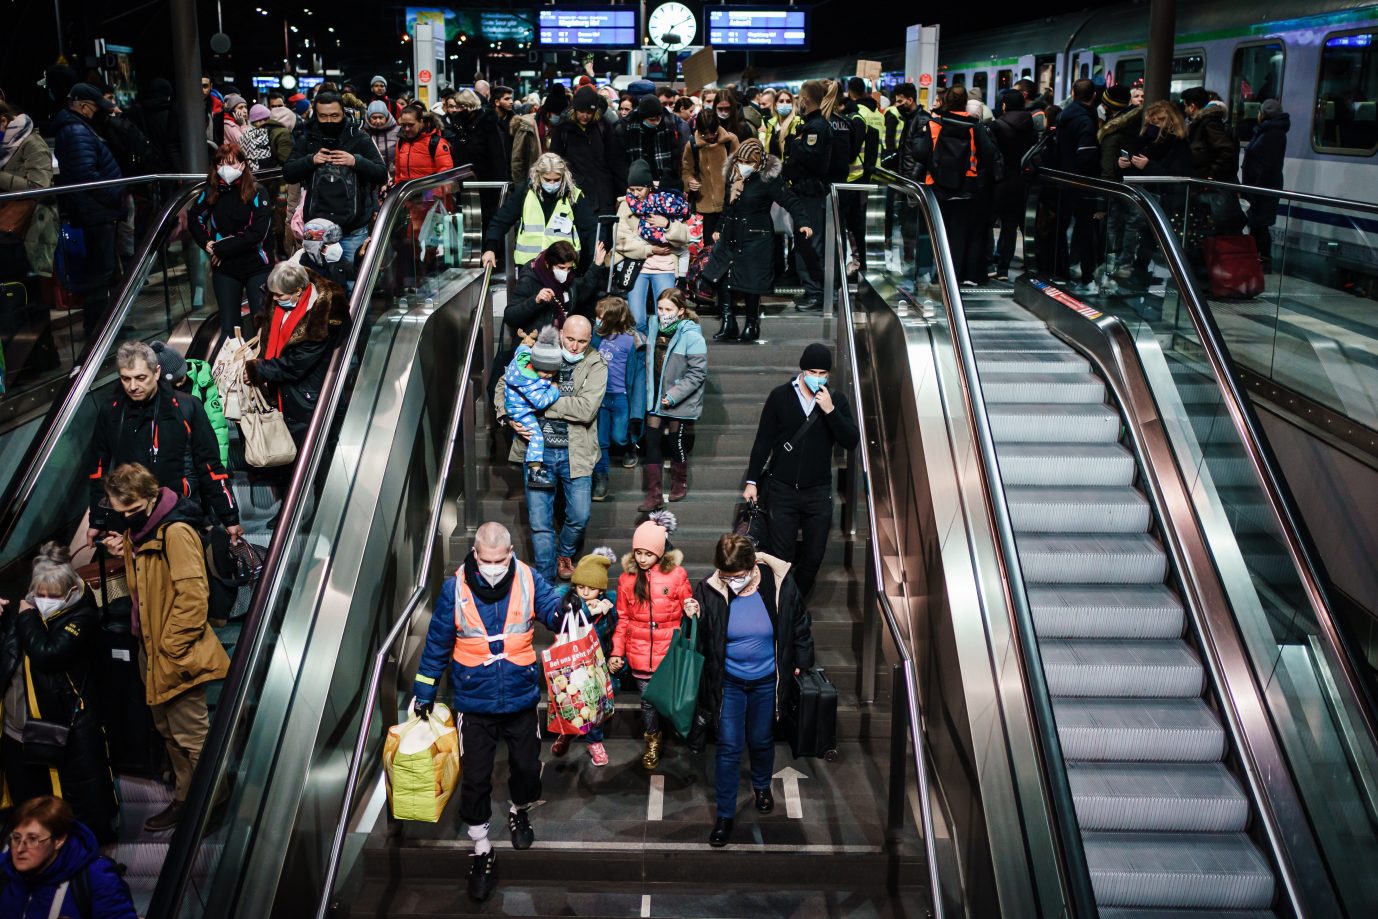 Ukrainische Flüchtlinge am Berliner Hauptbahnhof: 10.000 weitere könnten kommen Foto: picture alliance / CLEMENS BILAN / EPA